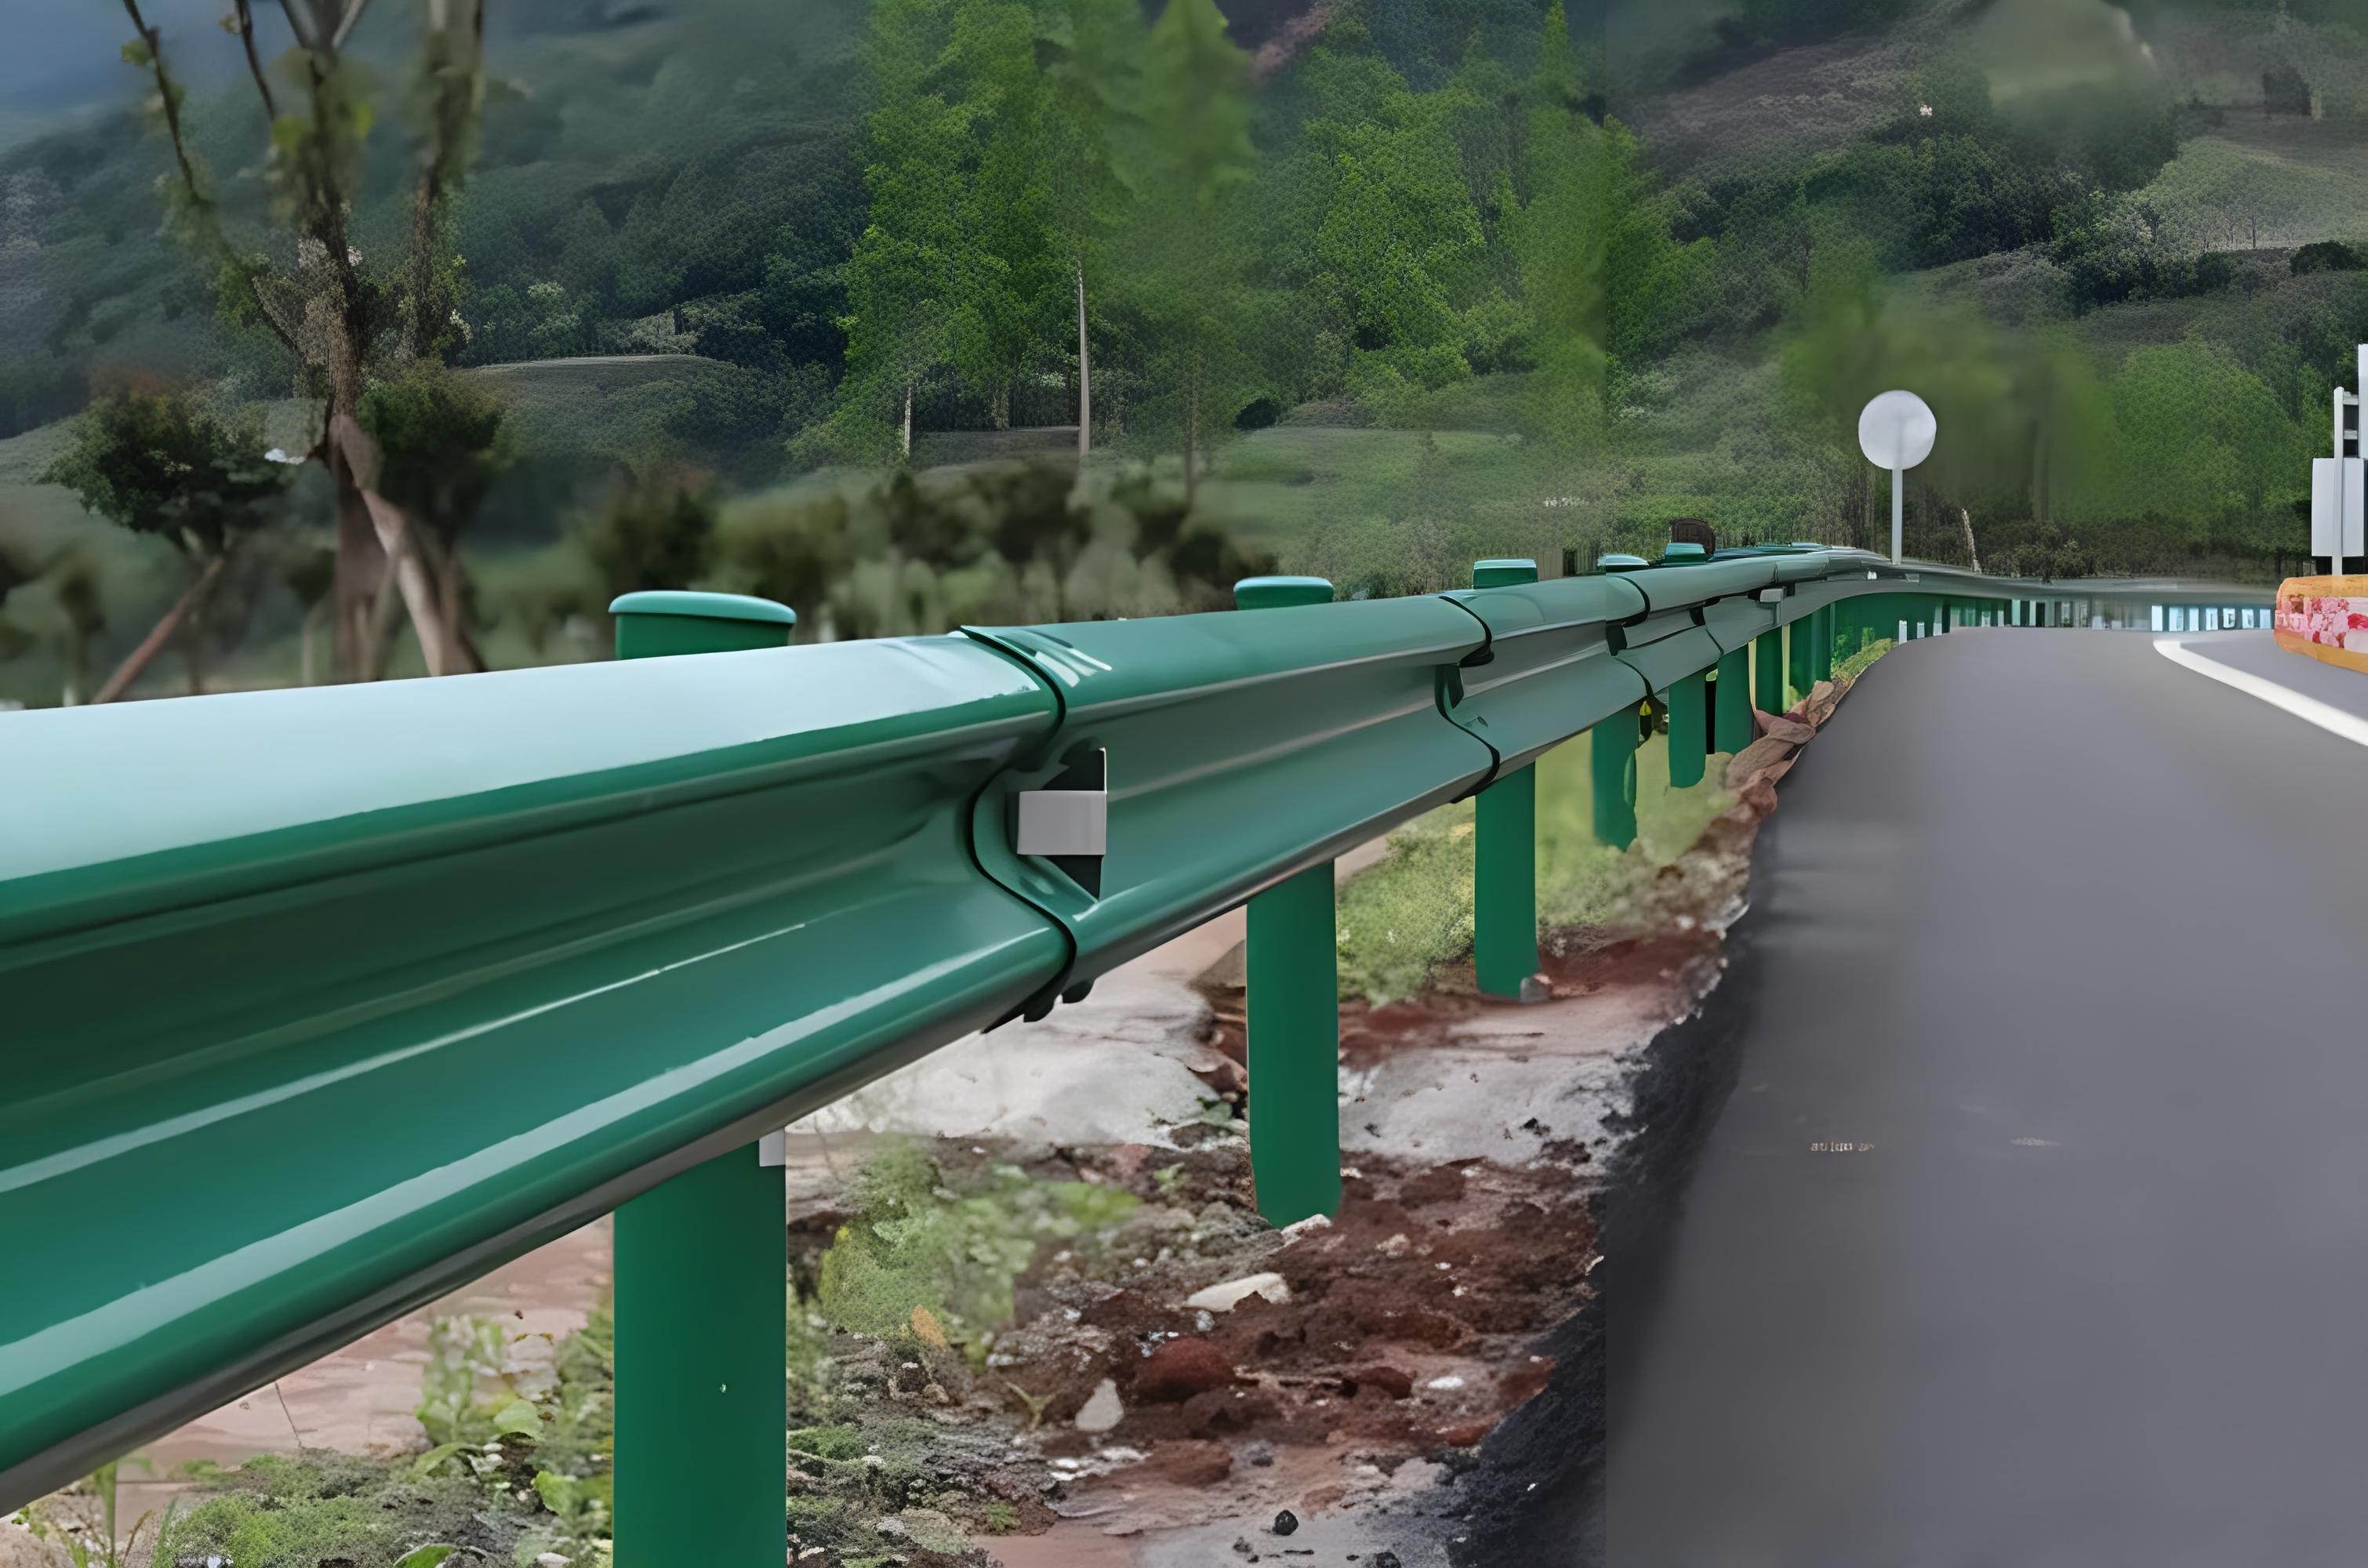 伊犁波形护栏保护道路安全的重要设施